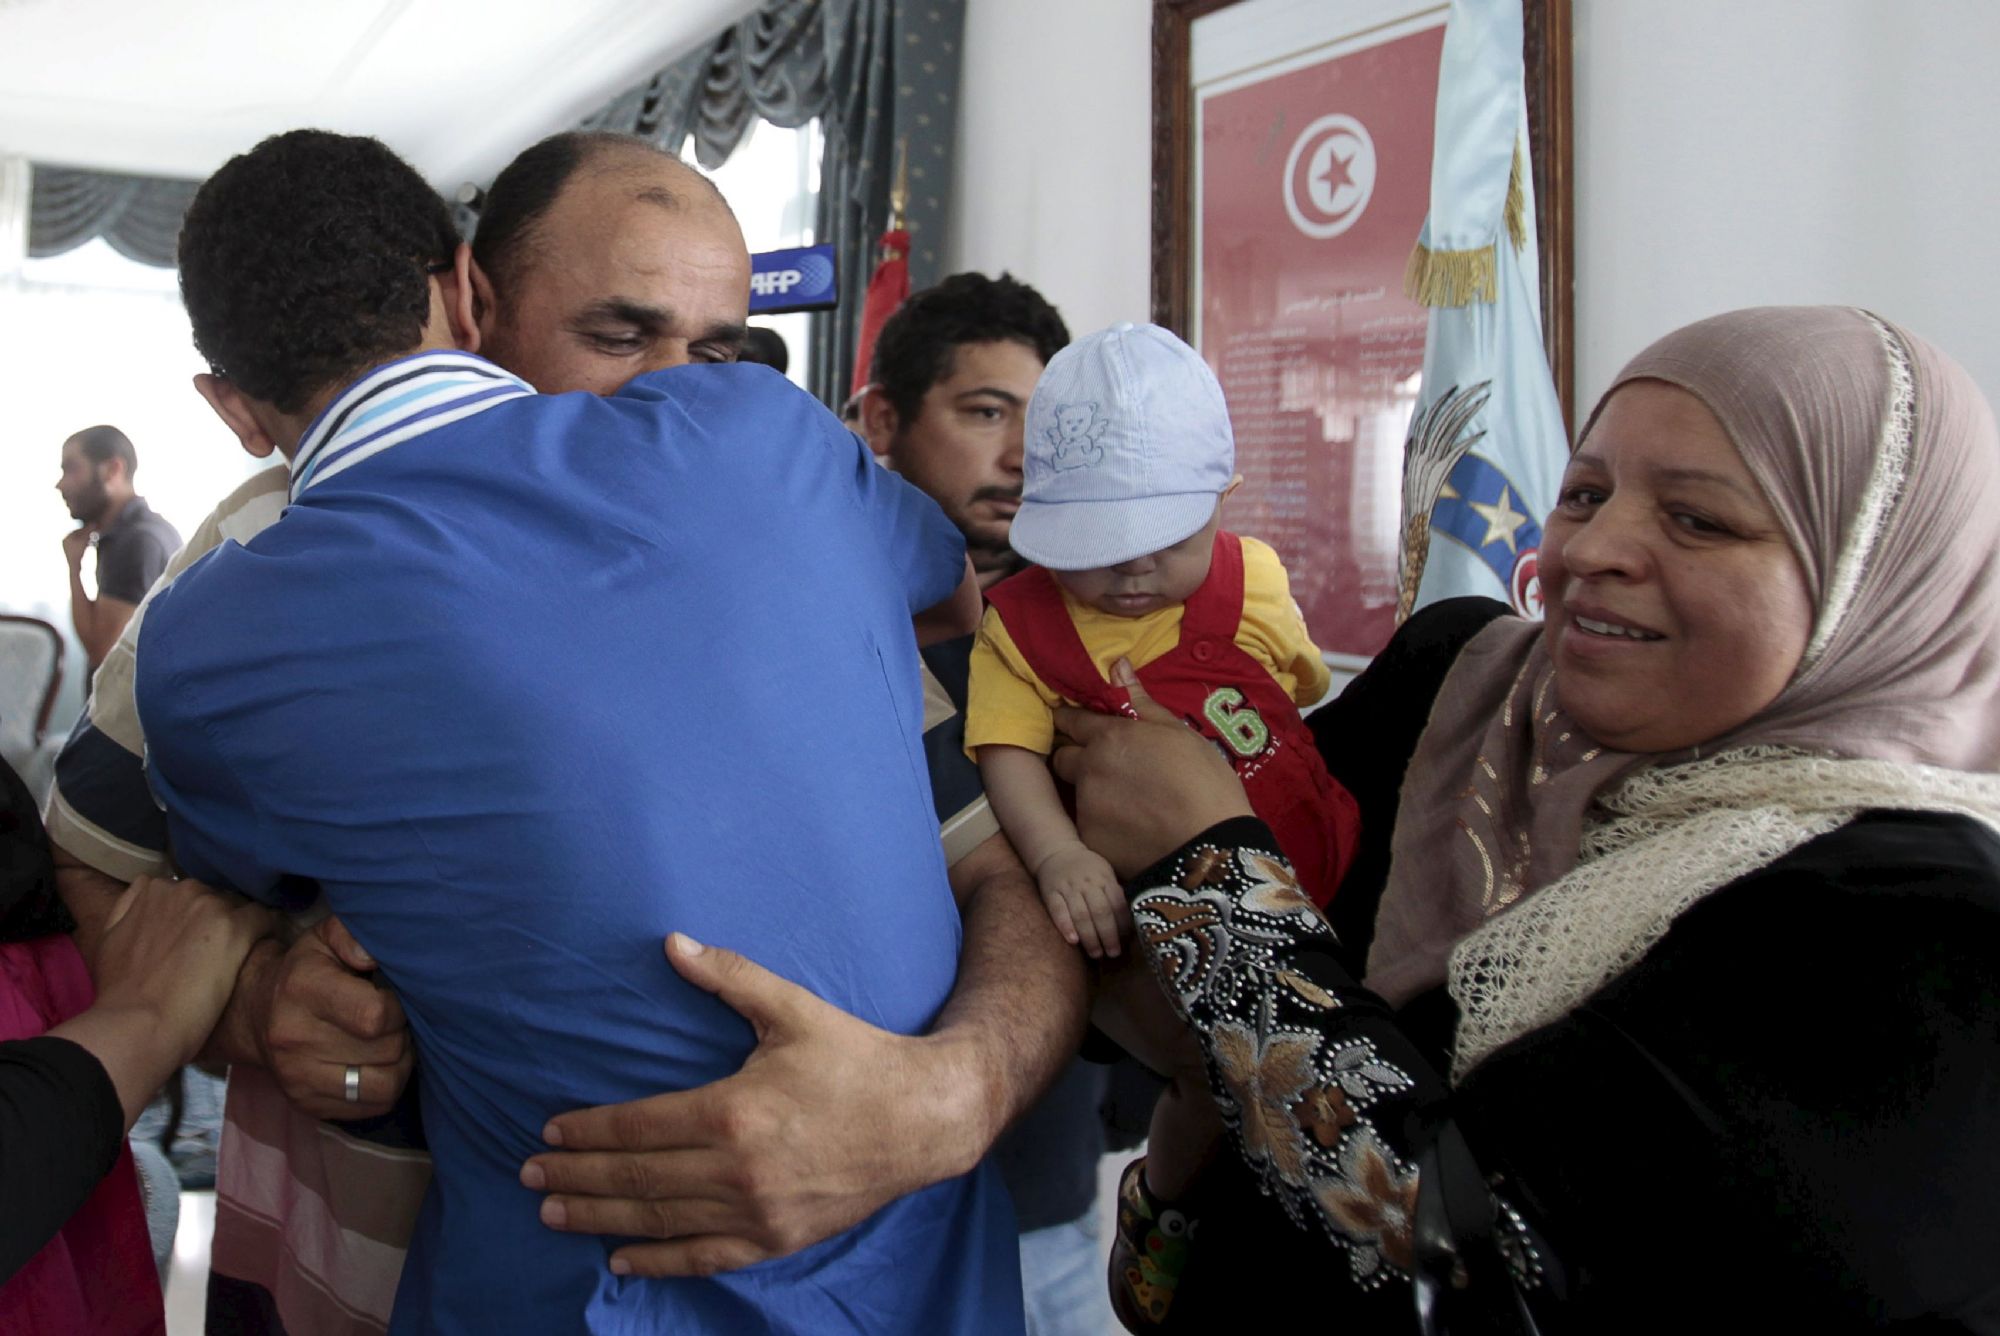 دبلوماسيون تونسيون بعد الافراج عنهم في ليبيا